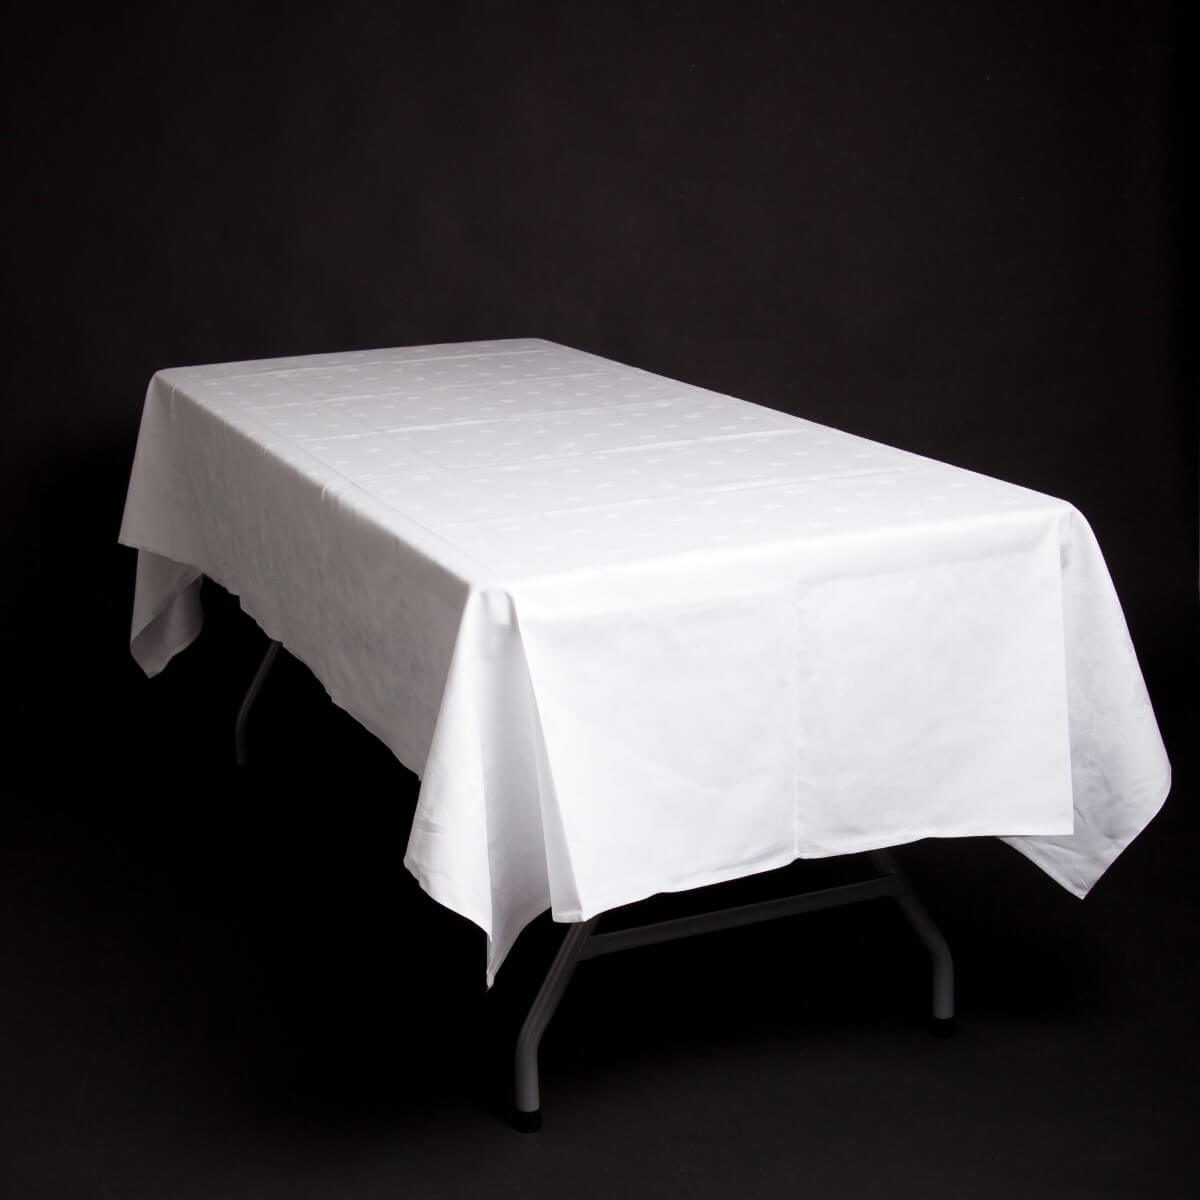 Rektangulært bord med hvit duk (140x220cm).